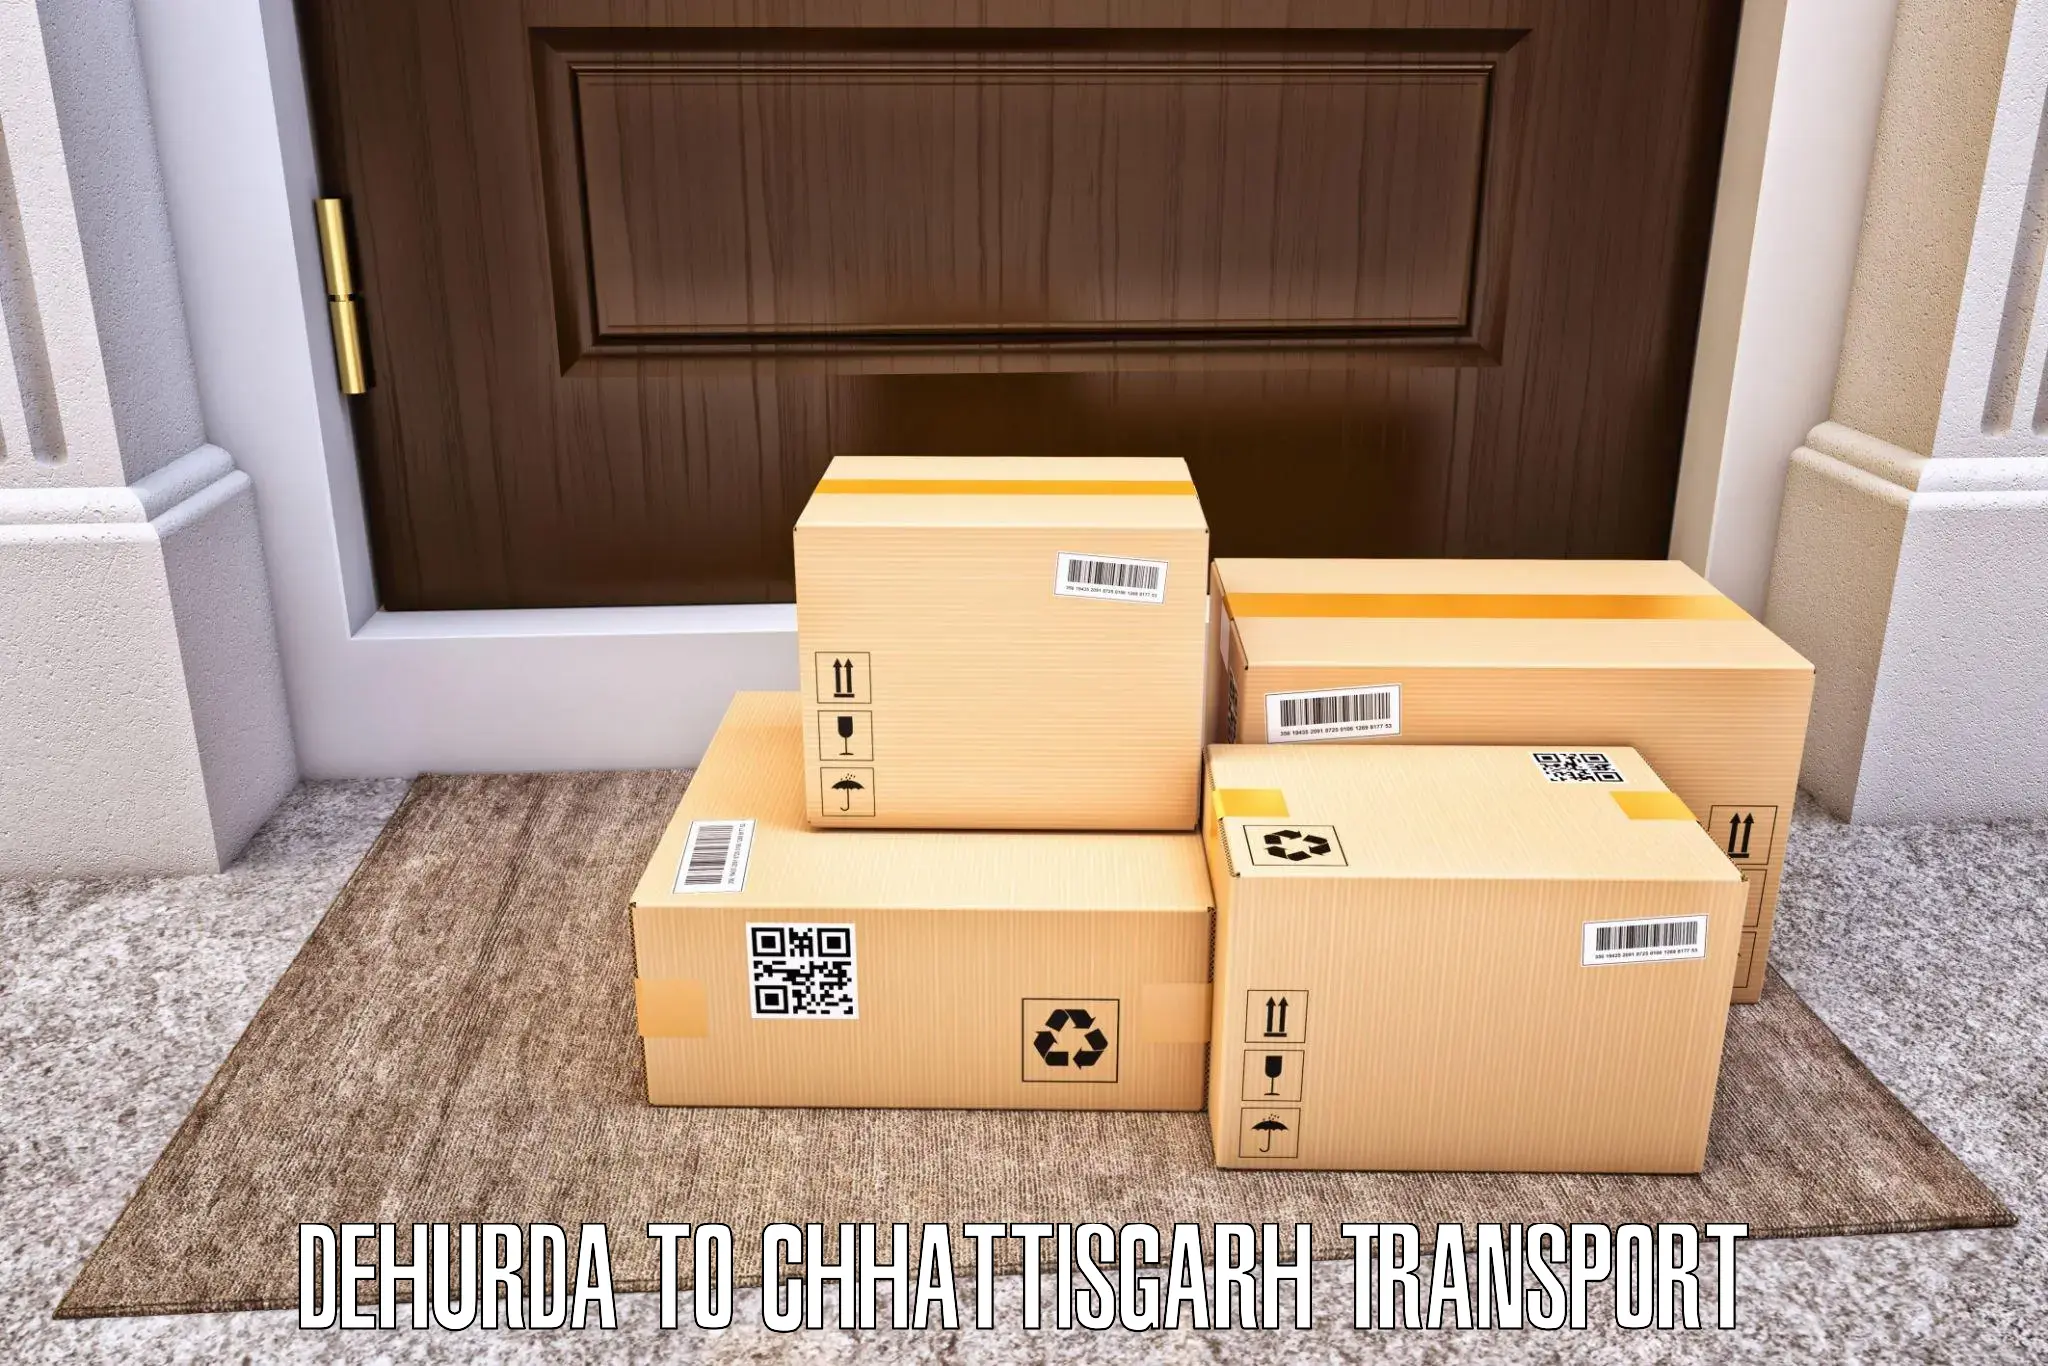 International cargo transportation services Dehurda to Chhattisgarh